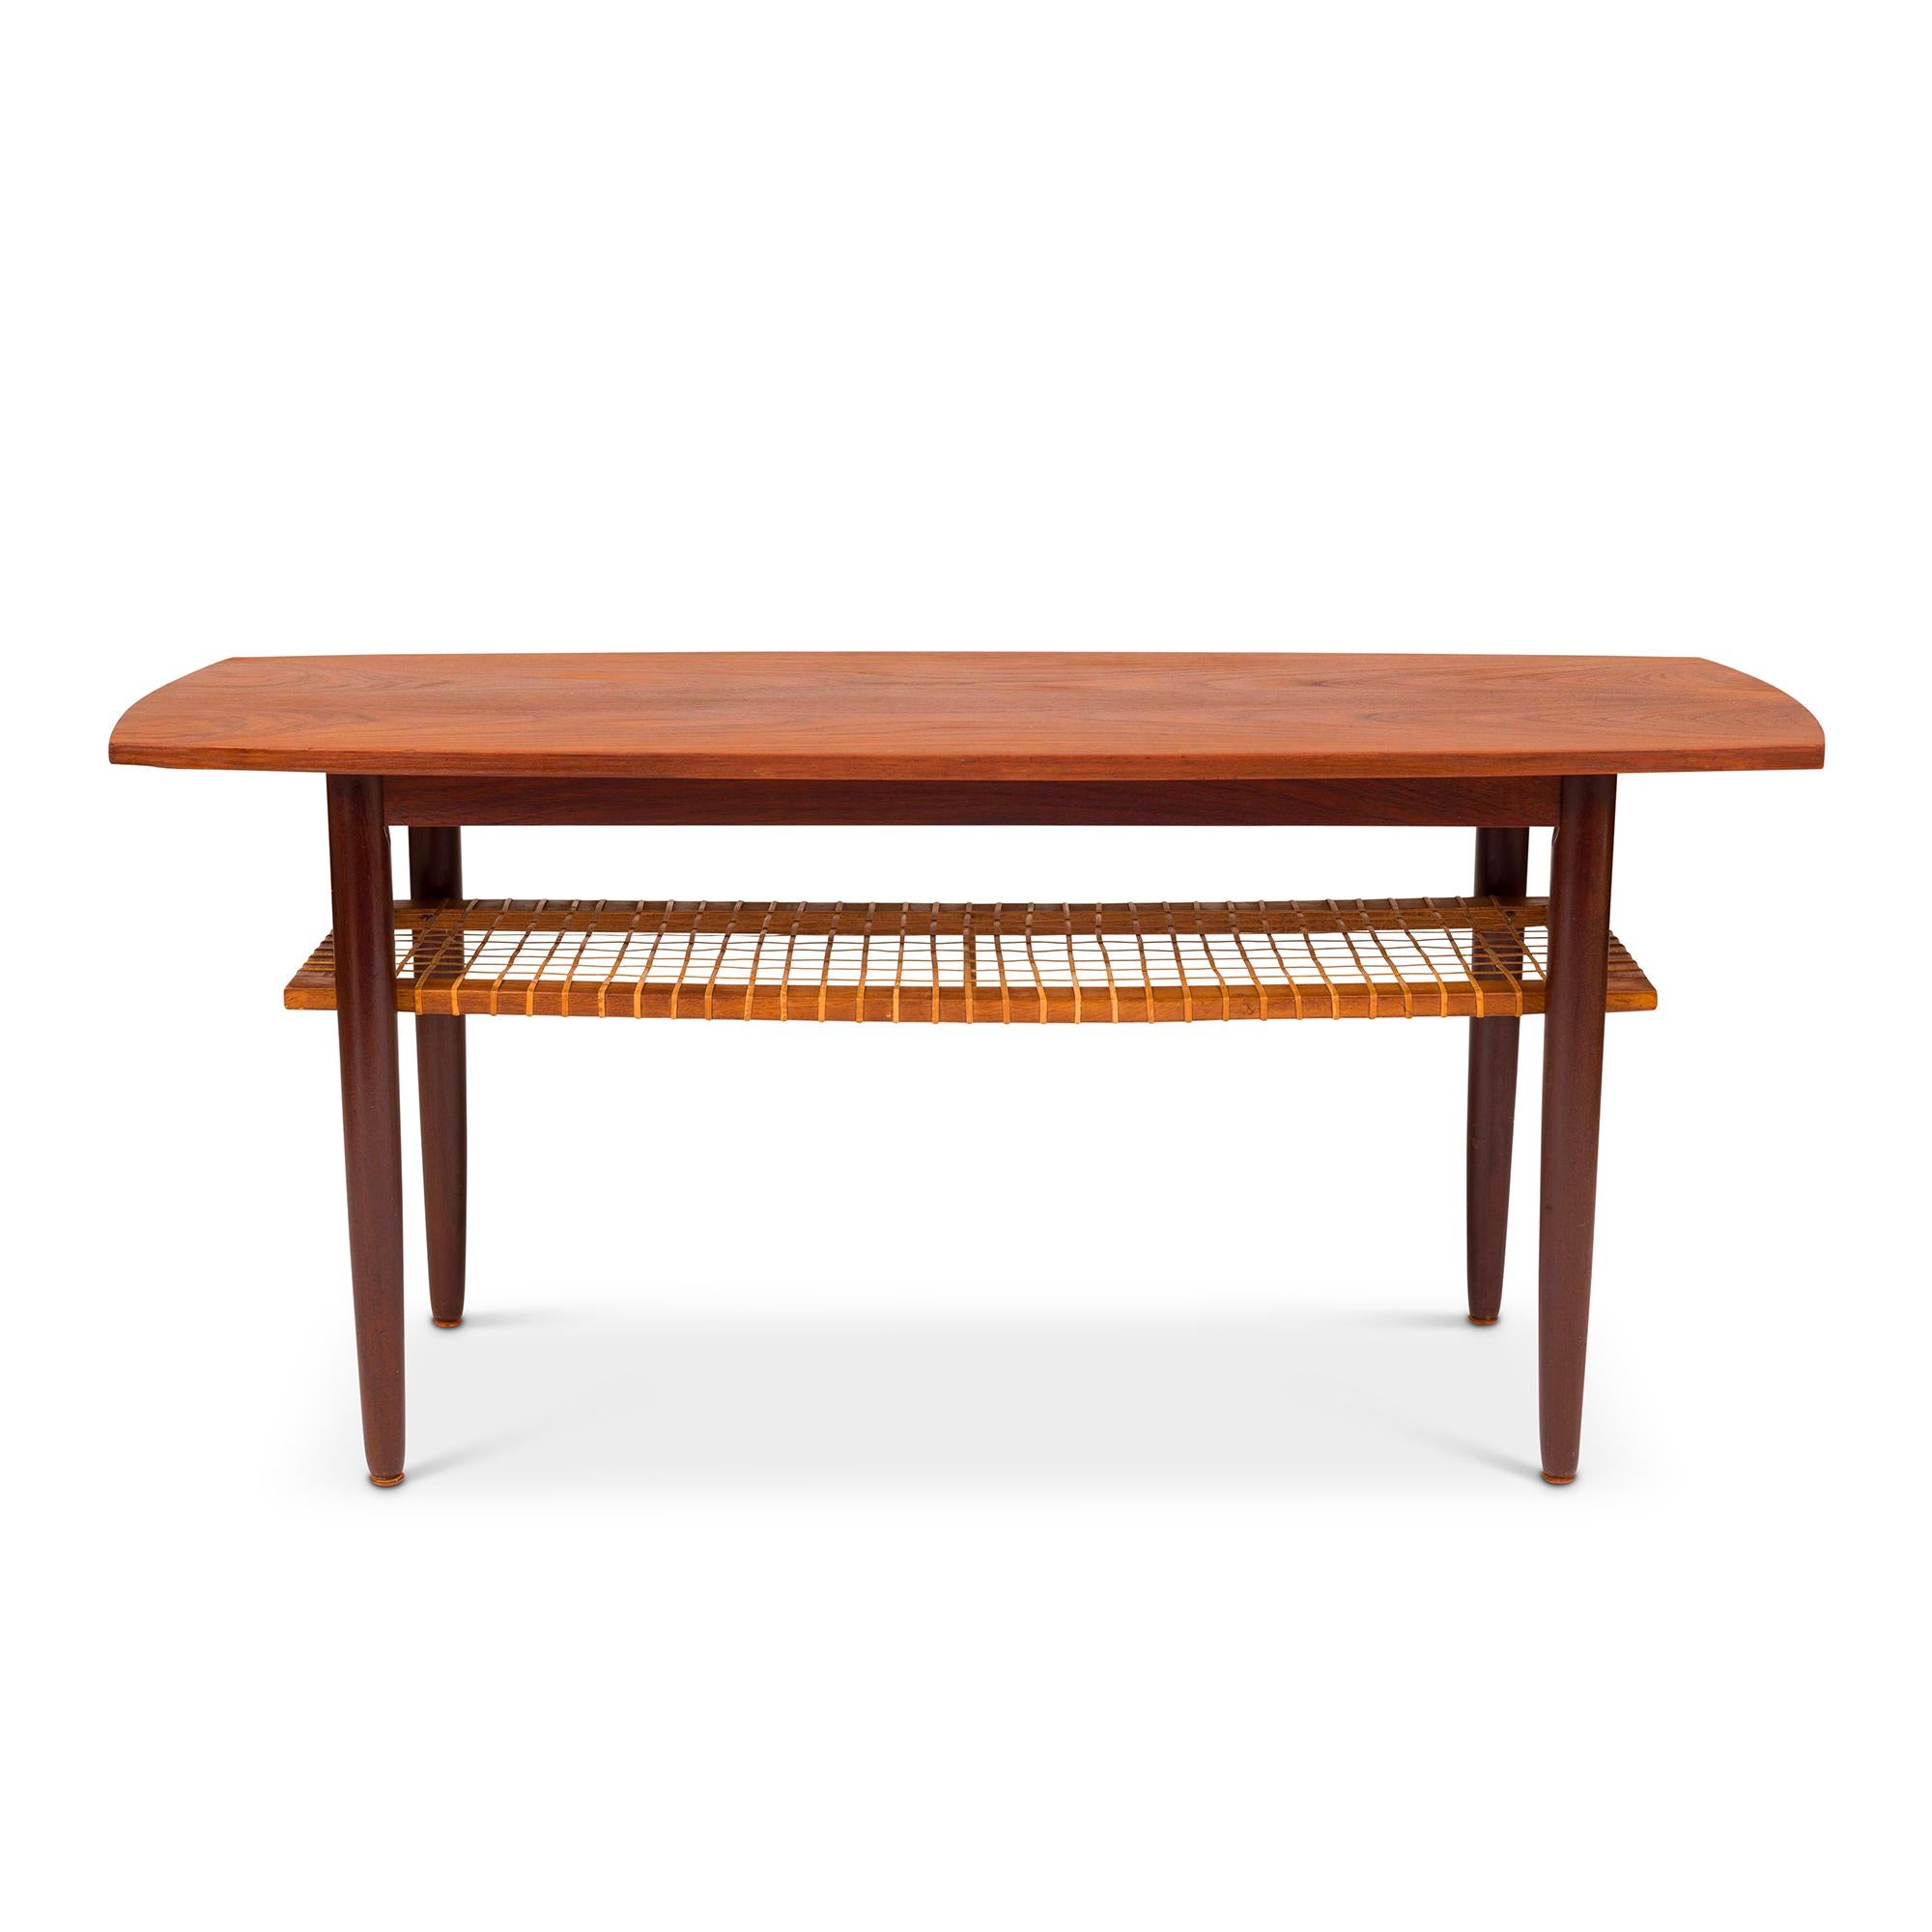 La table basse danoise en teck et en rotin est un meuble élégant et polyvalent, emblématique du design moderne du milieu du siècle dernier. Caractérisée par des lignes épurées, une simplicité élégante et un savoir-faire artisanal, cette table basse